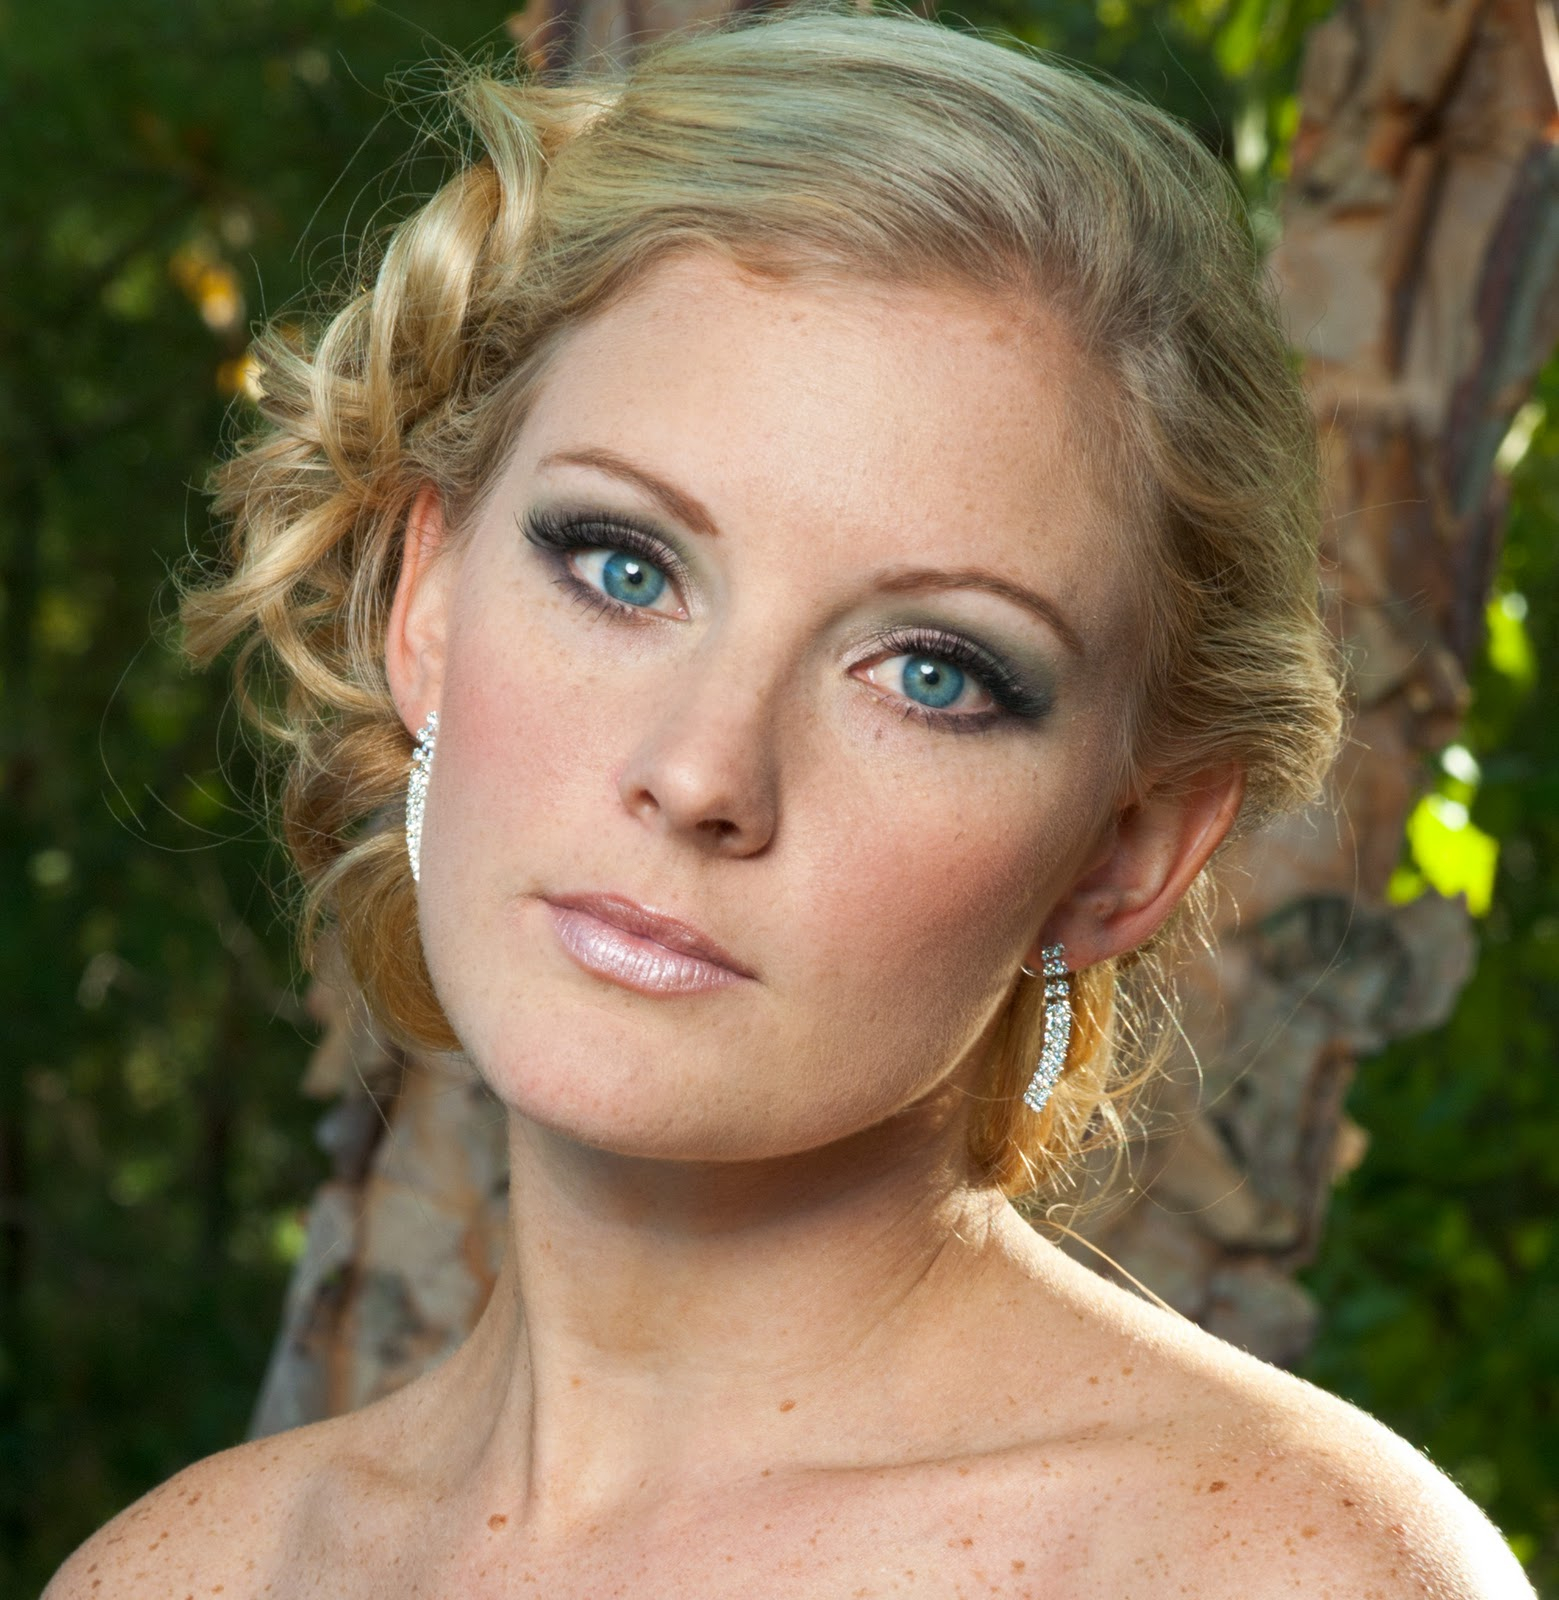 Makeup For Blue Eyes Blonde Hair Blonde Hair Blue Eyes Wedding Makeup Wedding Day